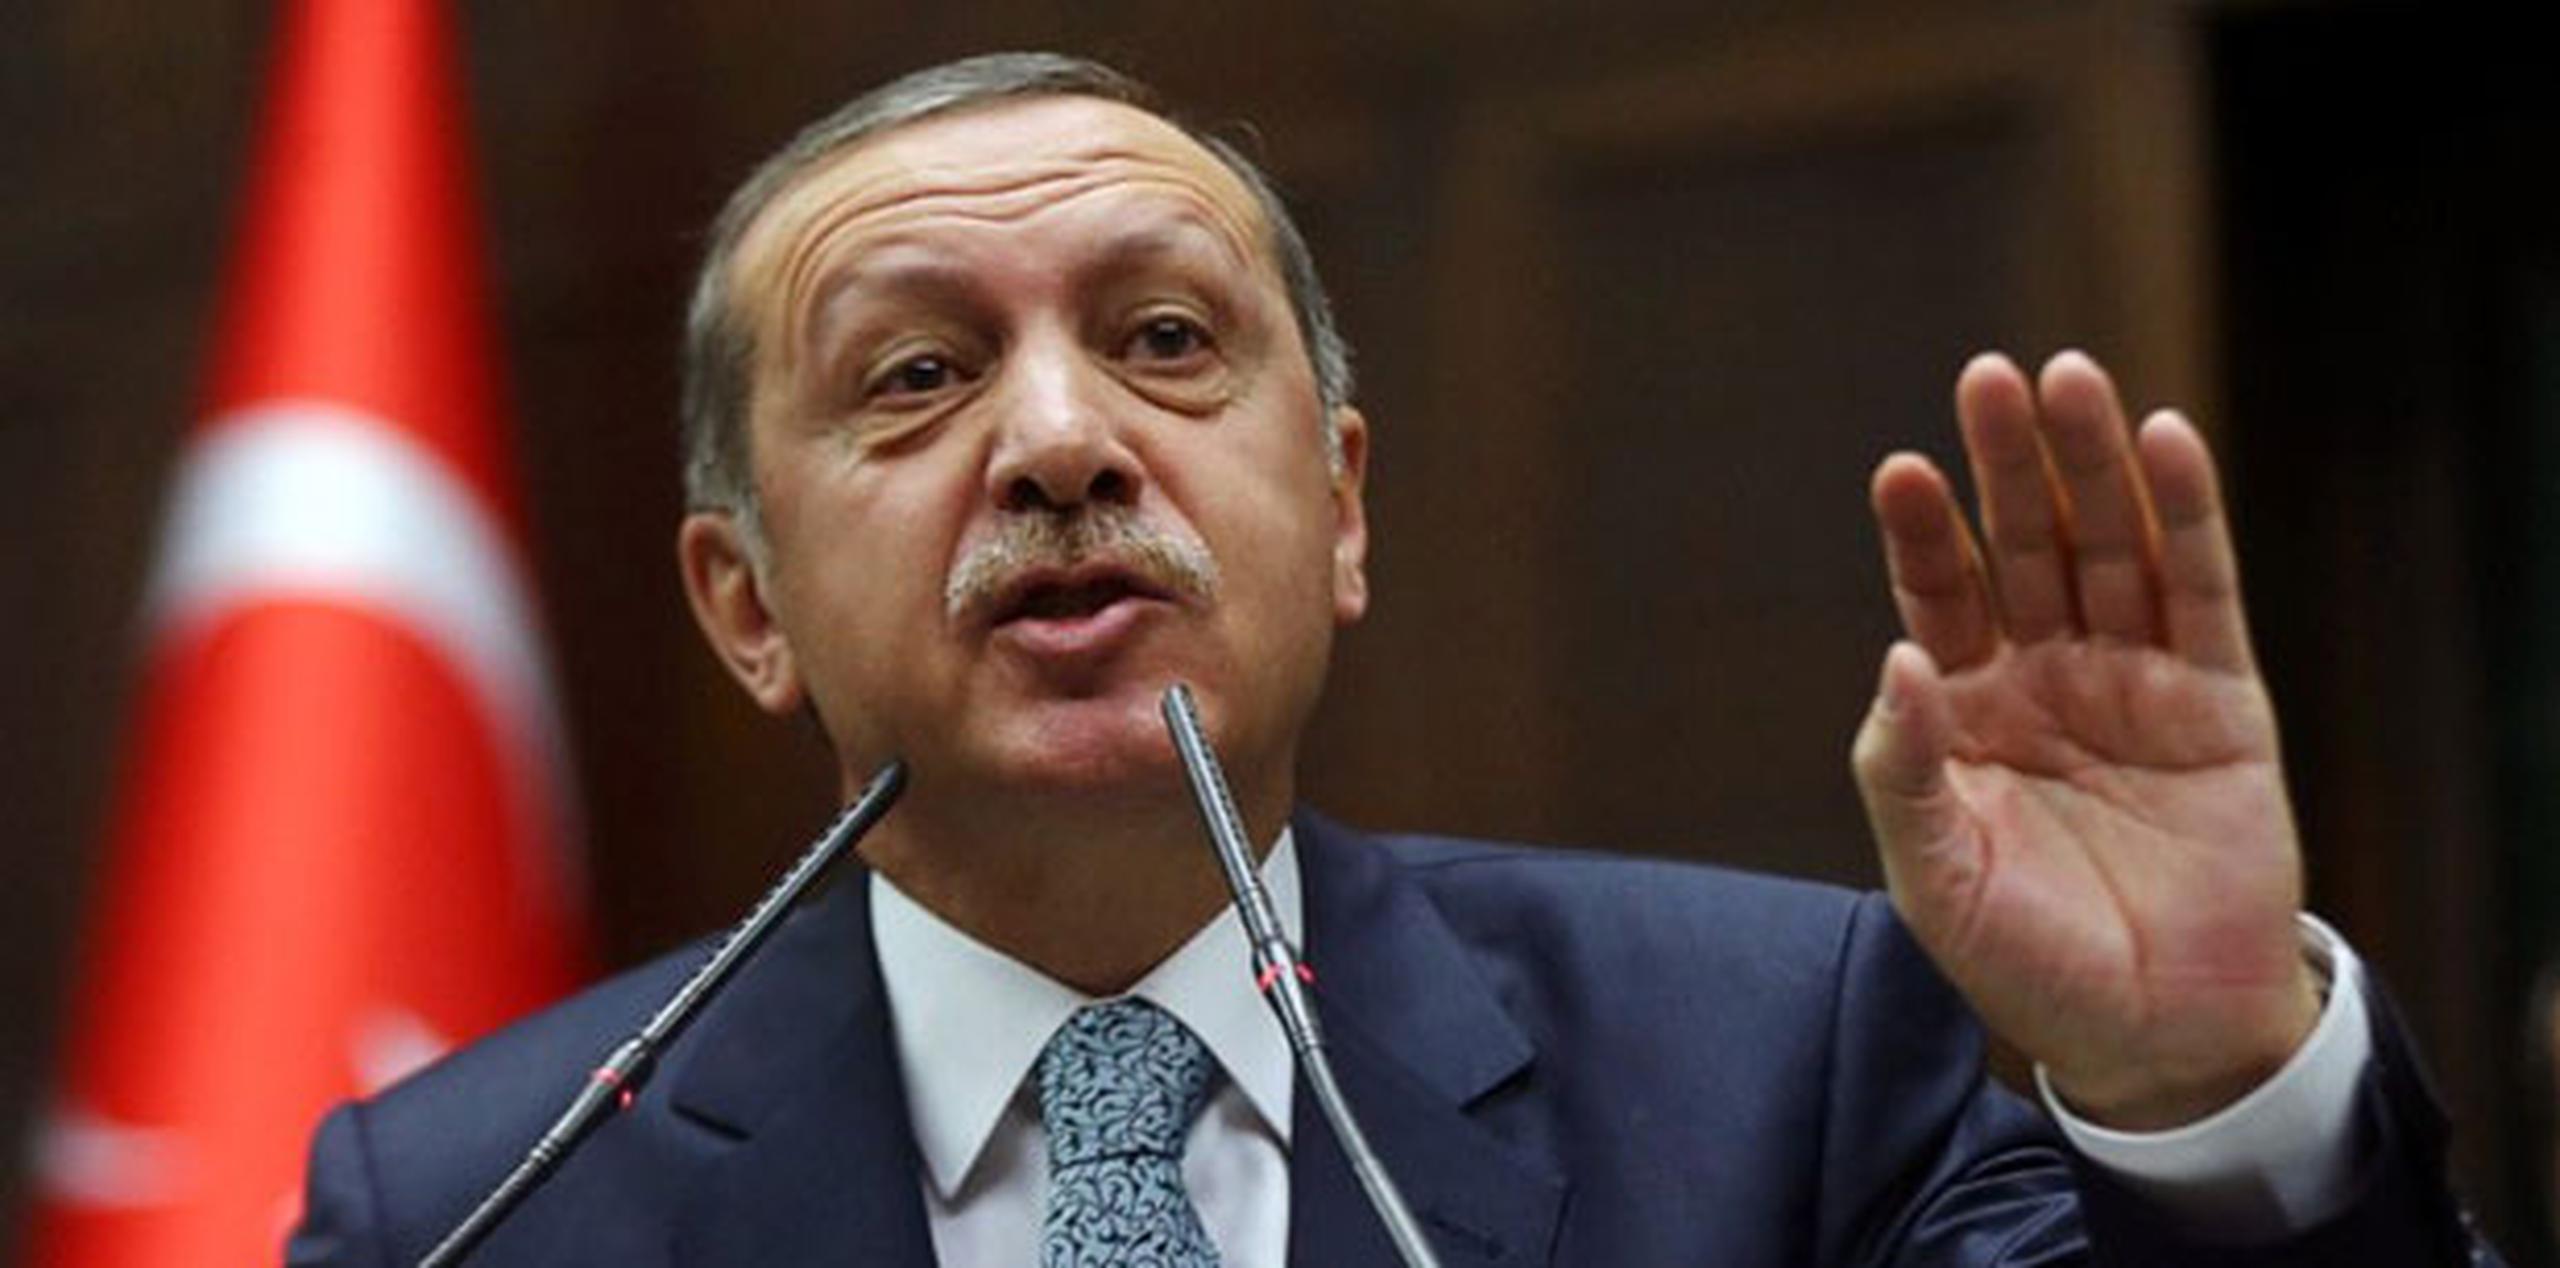 El primer ministro, Recep Tayyip Erdogan, había prometido en una asamblea electoral que iba a "arrancar de raíz” la red social, sin importarle lo que opinara la comunidad internacional.(AFP)